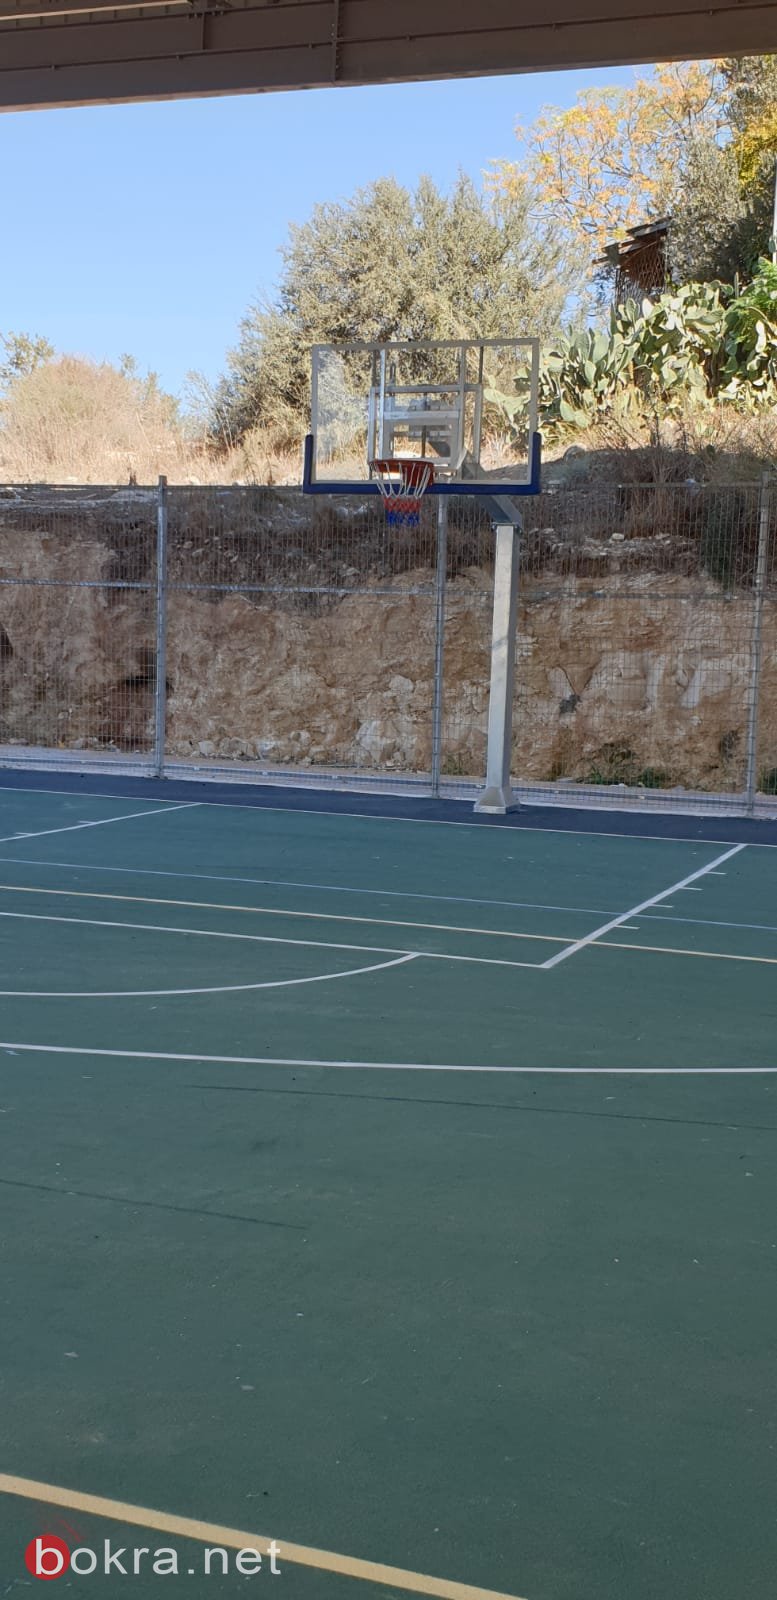 بلدية الناصرة تنهي العمل في اقامة ملعب كرم قدم وكرة سلة في كرم الصاحب-3